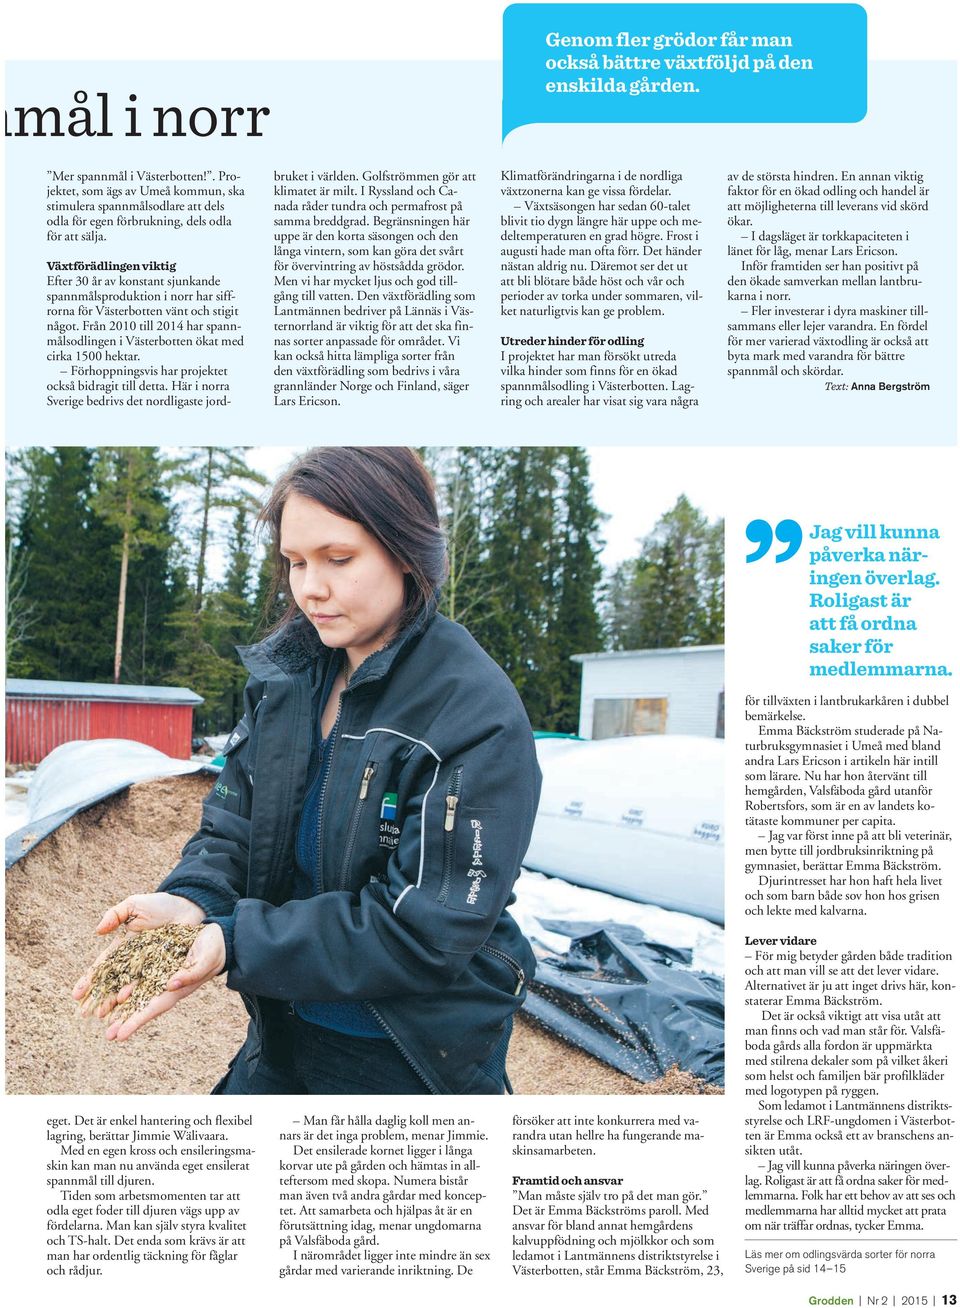 Växtförädlingen viktig Efter 30 år av konstant sjunkande spannmålsproduktion i norr har siffrorna för Västerbotten vänt och stigit något.